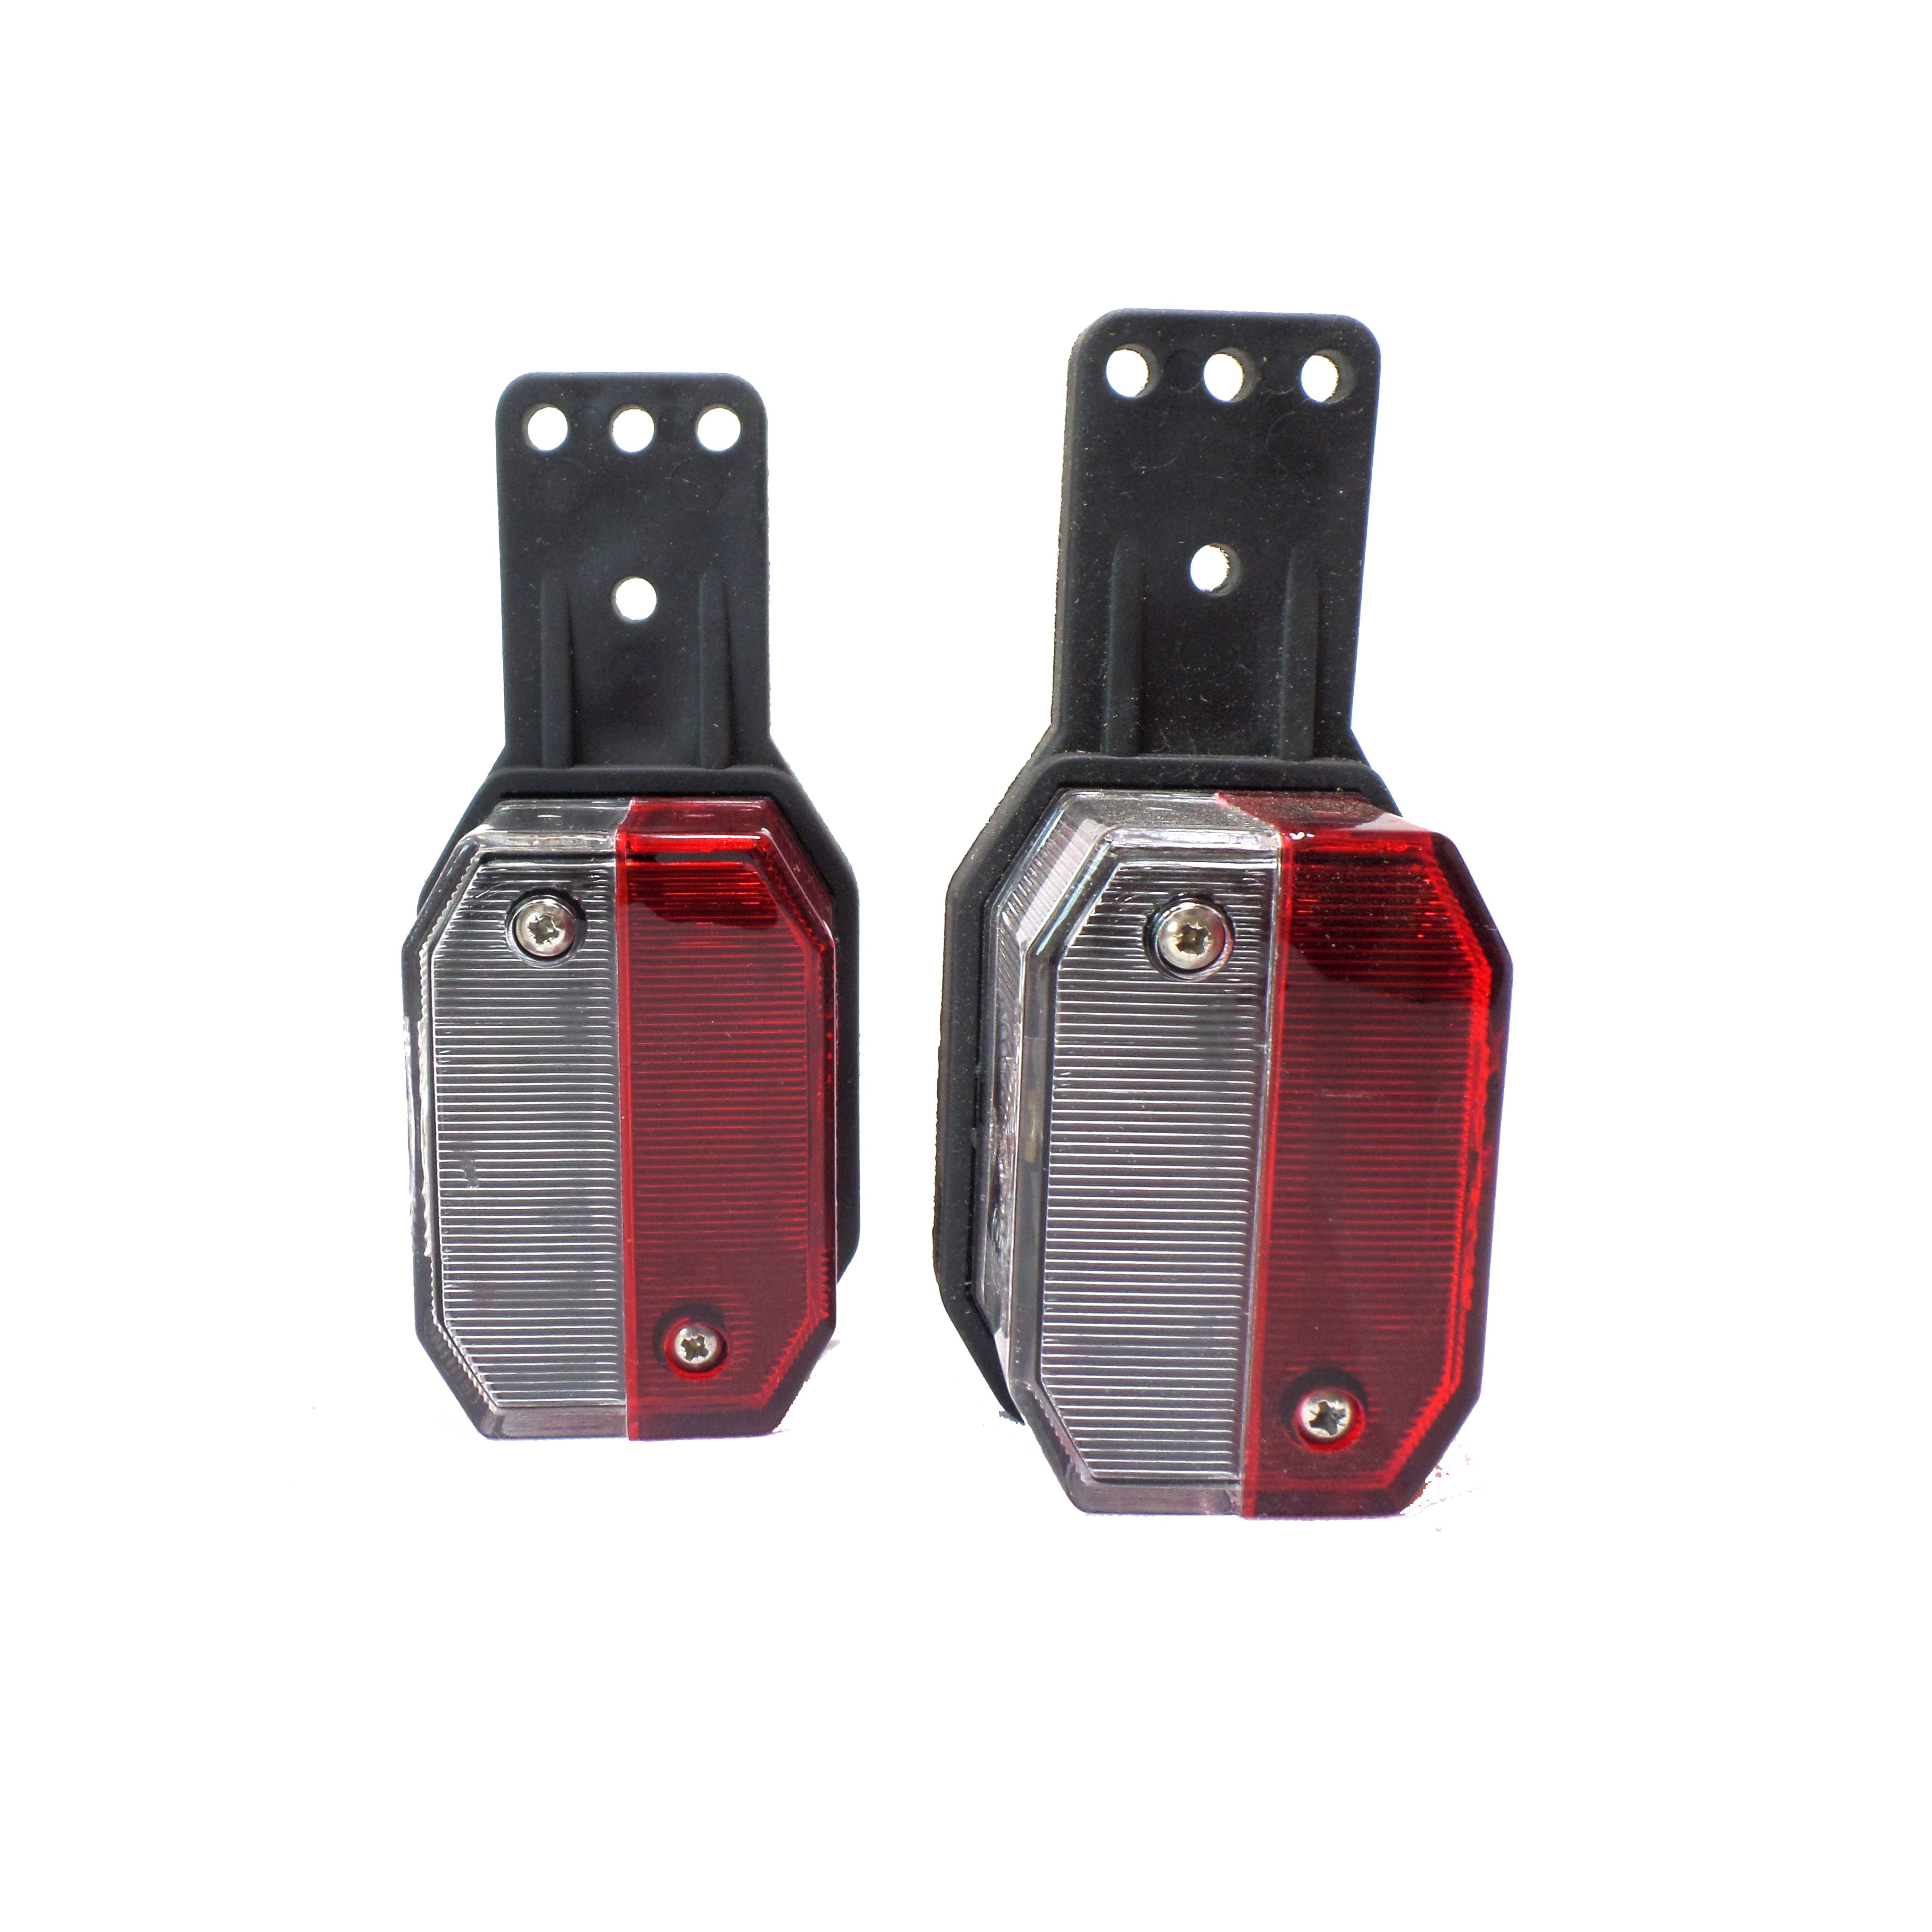 Aspöck Anhänger-Rückleuchte weiß Leuchtmittel, Flexipoint Positionsleuchte 2x / - rot rot/weiß, ohne Umrissleuchte